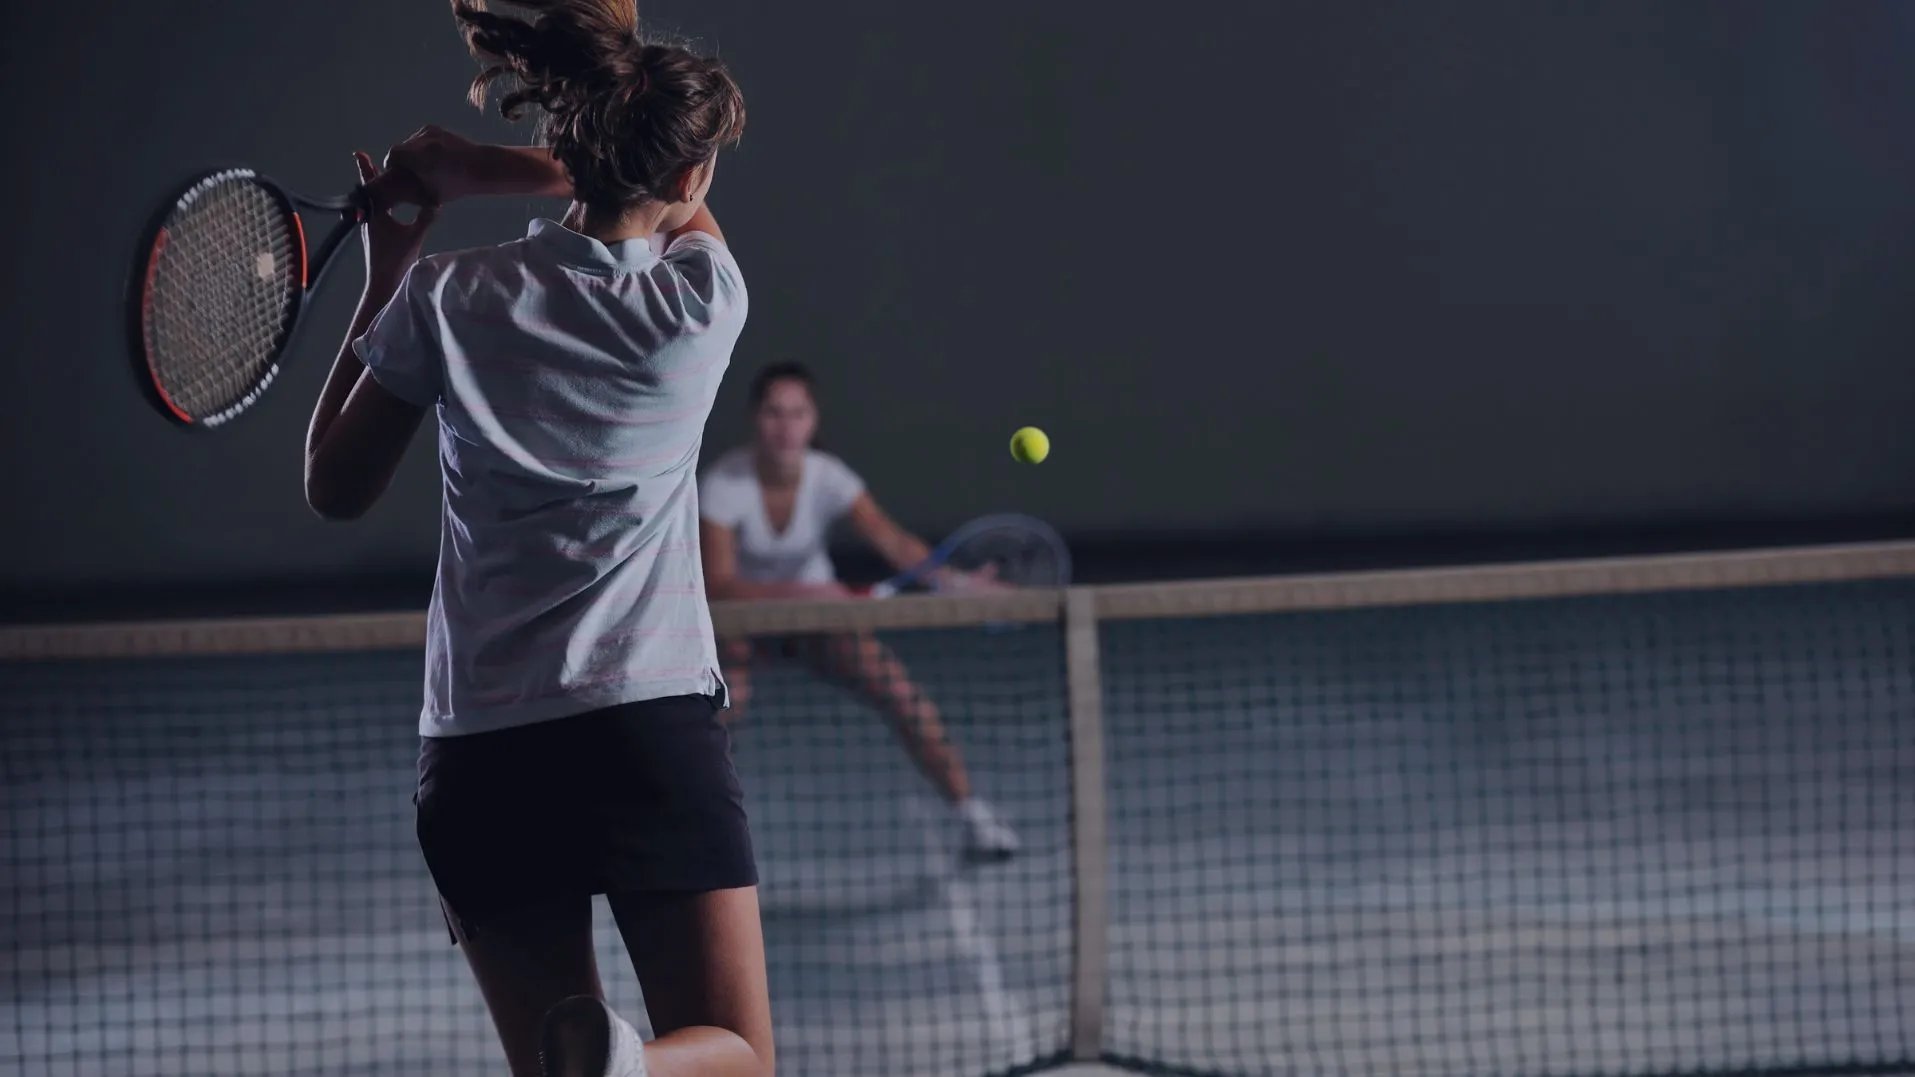 Tennisspielzweier Frauen in dunkler Tennishalle